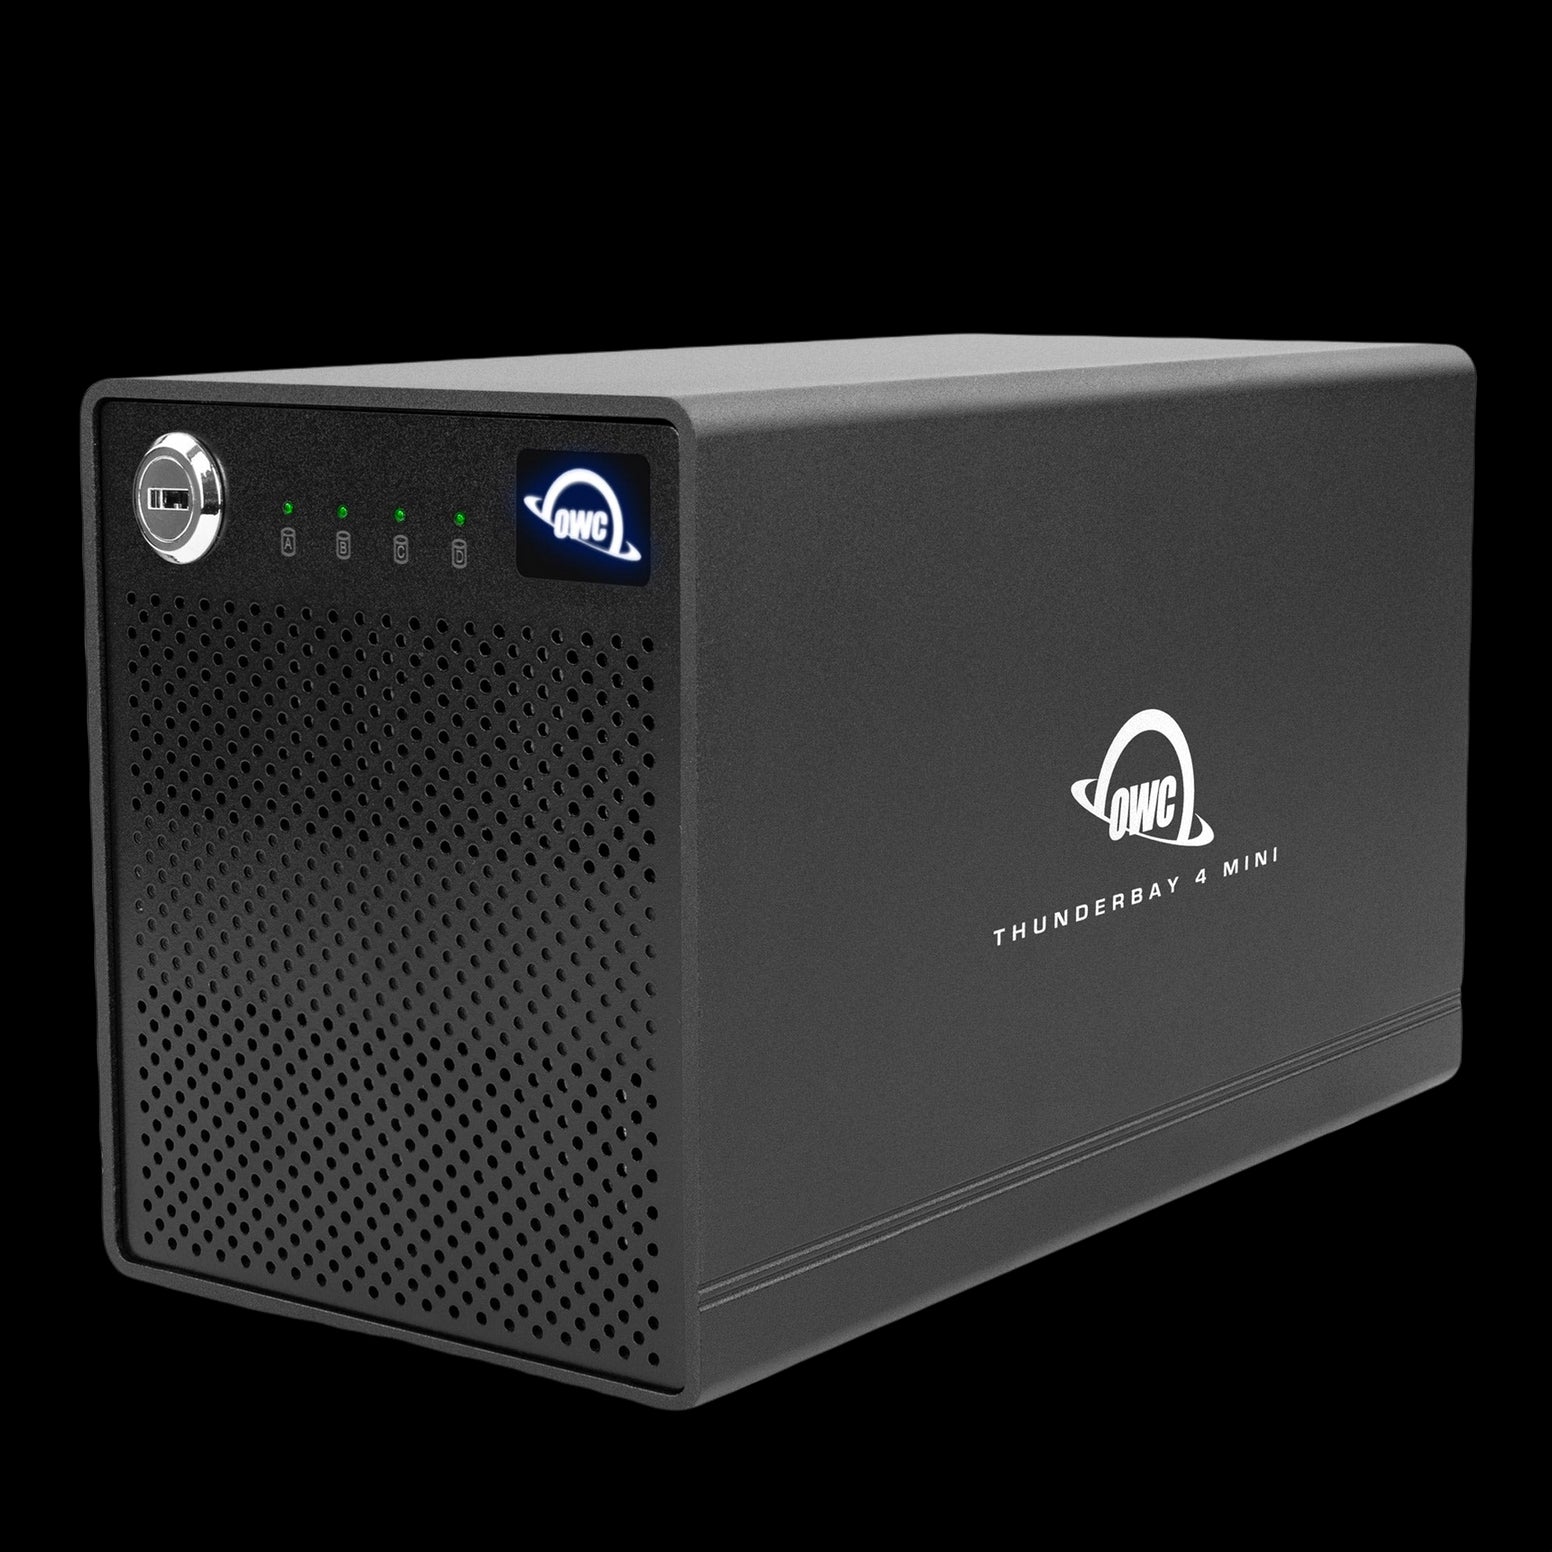 OWC 4TB SSD ThunderBay 4 mini (Thunderbolt 3 Model) with Dual Thunderbolt 3 Ports and SoftRAID XT